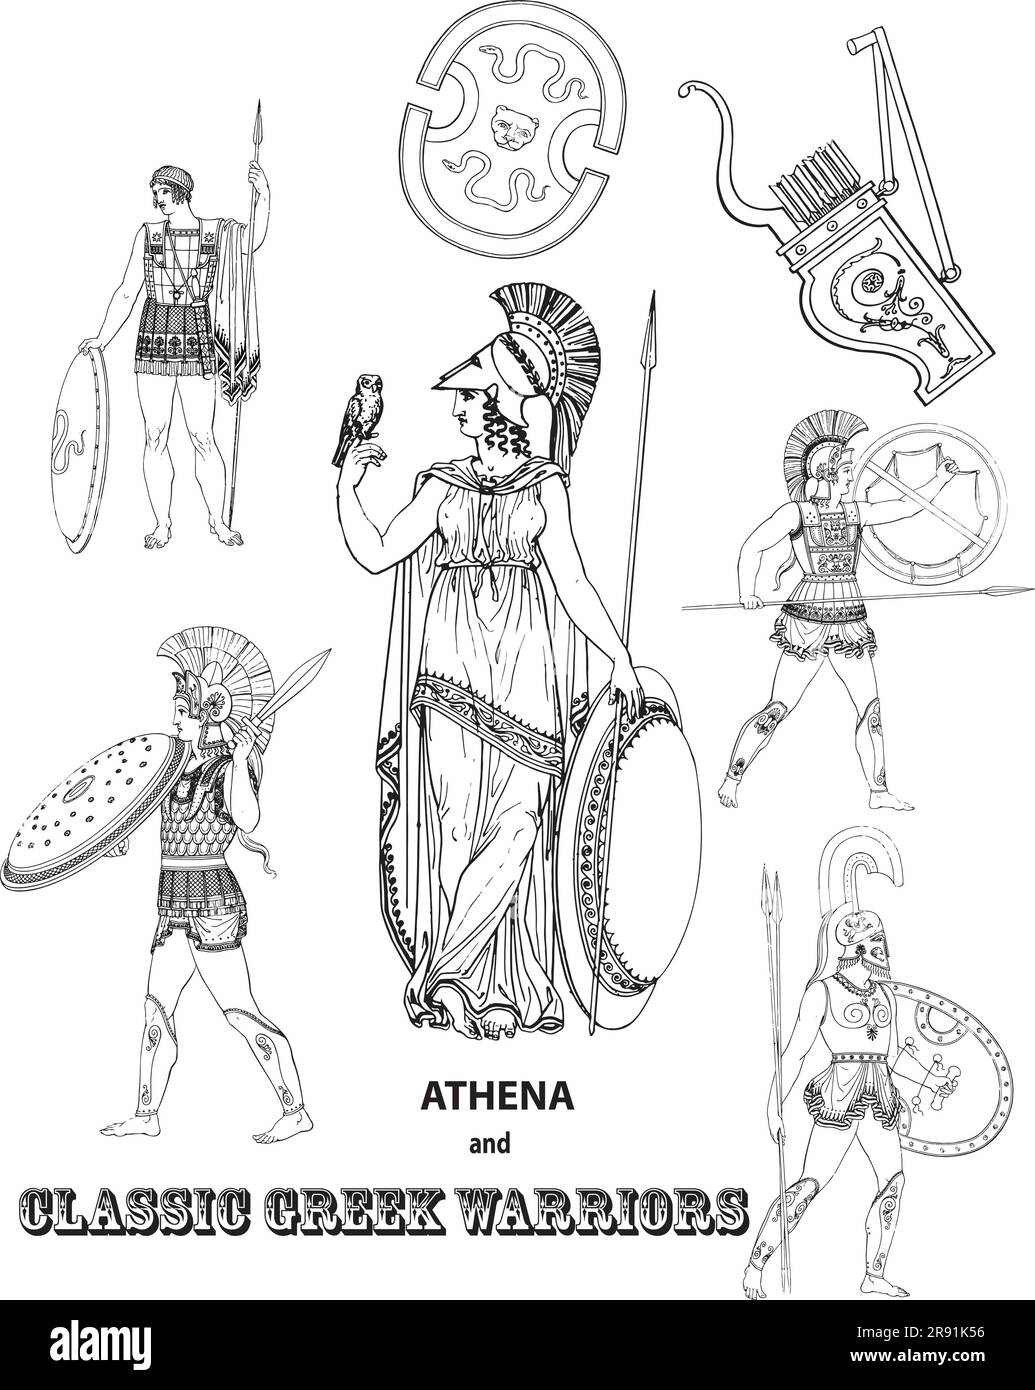 Disegni in bianco e nero di guerrieri greci classici che circondano Athena. Illustrazione Vettoriale